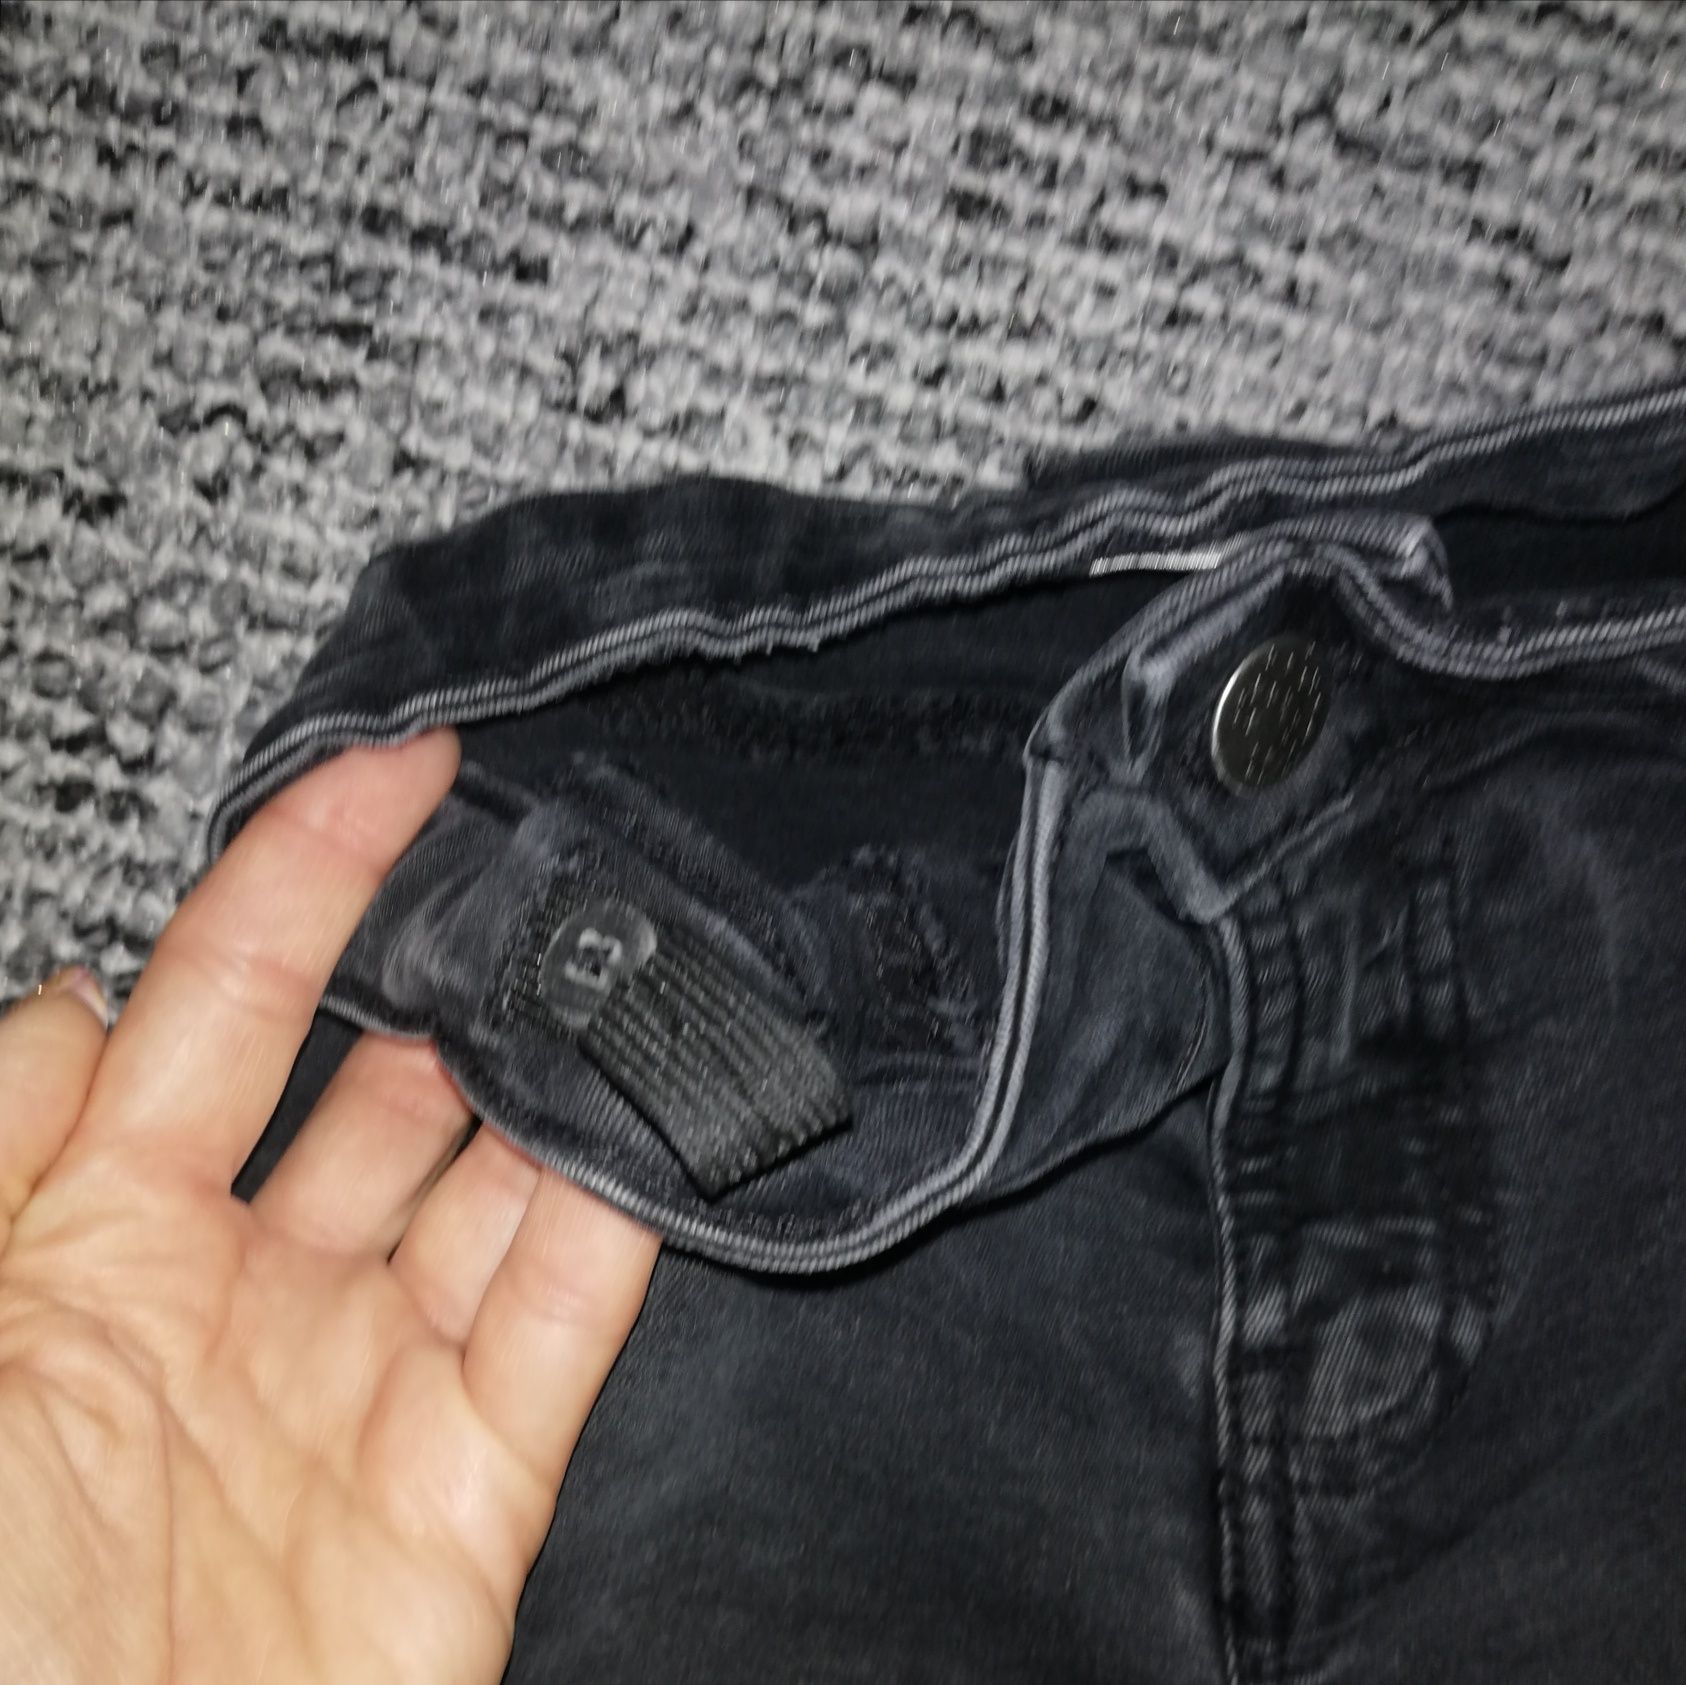 Czarne spodnie rurki skinny wąskie z dziurami